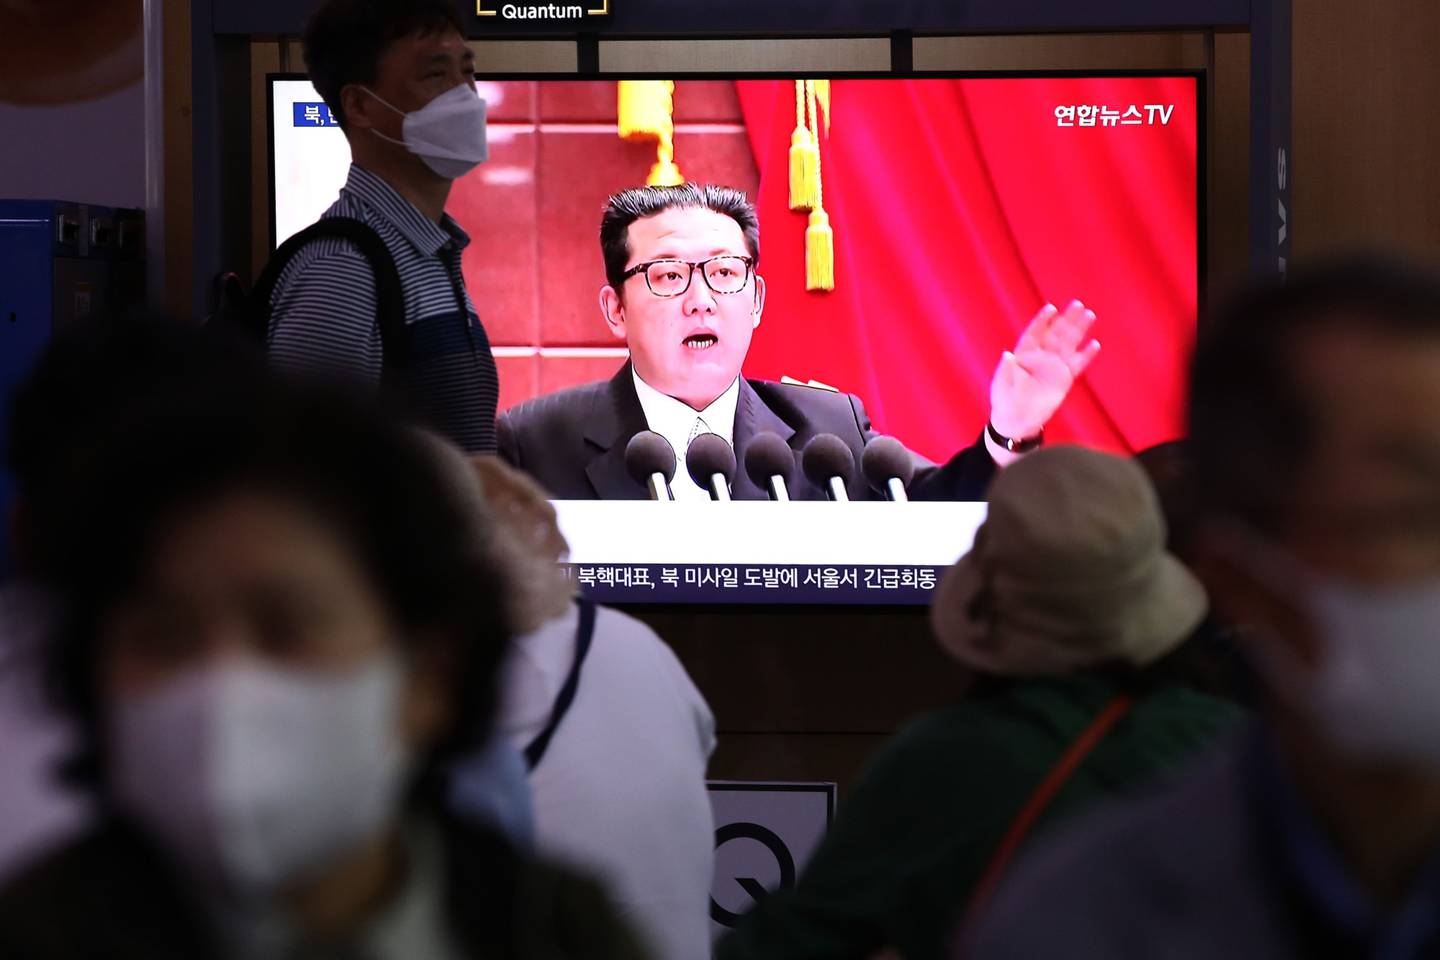 Varias personas observan una emisión de televisión que muestra una imagen de archivo del líder norcoreano Kim Jong-Un en la estación de ferrocarril de Seúl el 05 de junio de 2022 en Seúl, Corea del Sur. Foto de Chung Sung-Jun/Getty Images